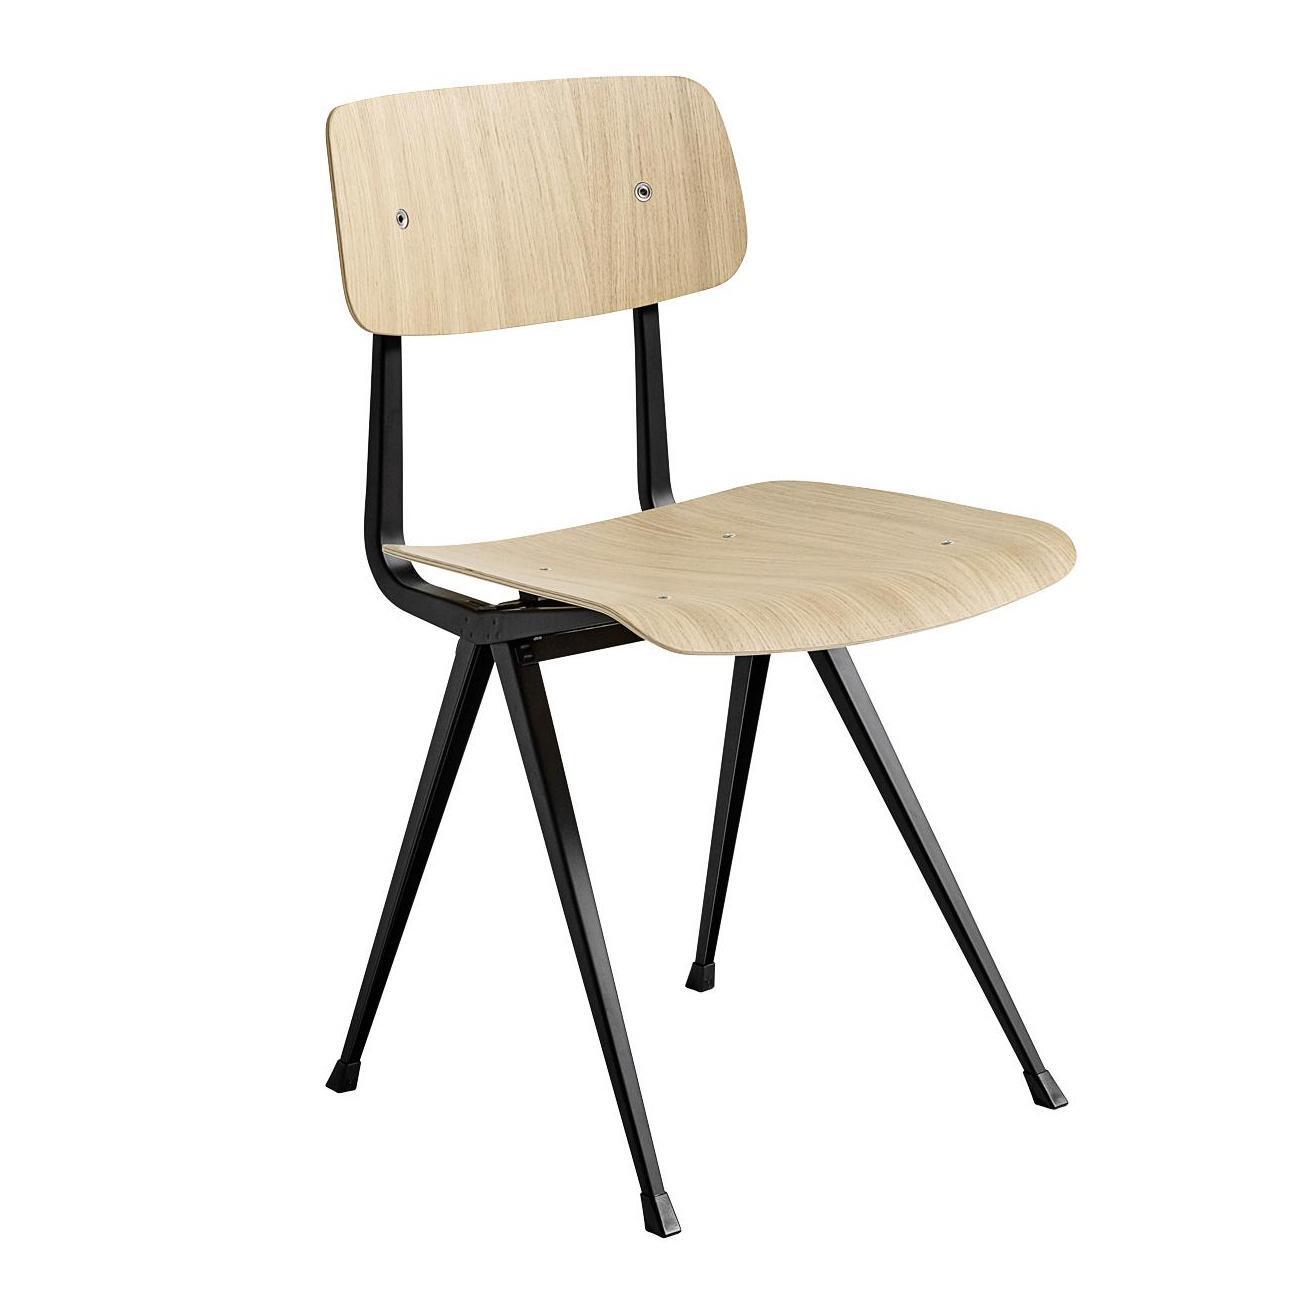 HAY - Result Stuhl Gestell schwarz - eiche/lackiert wasserbasiert/Gestell Stahl schwarz pulverbeschichtet/BxHxT 45,5x81x48,5cm